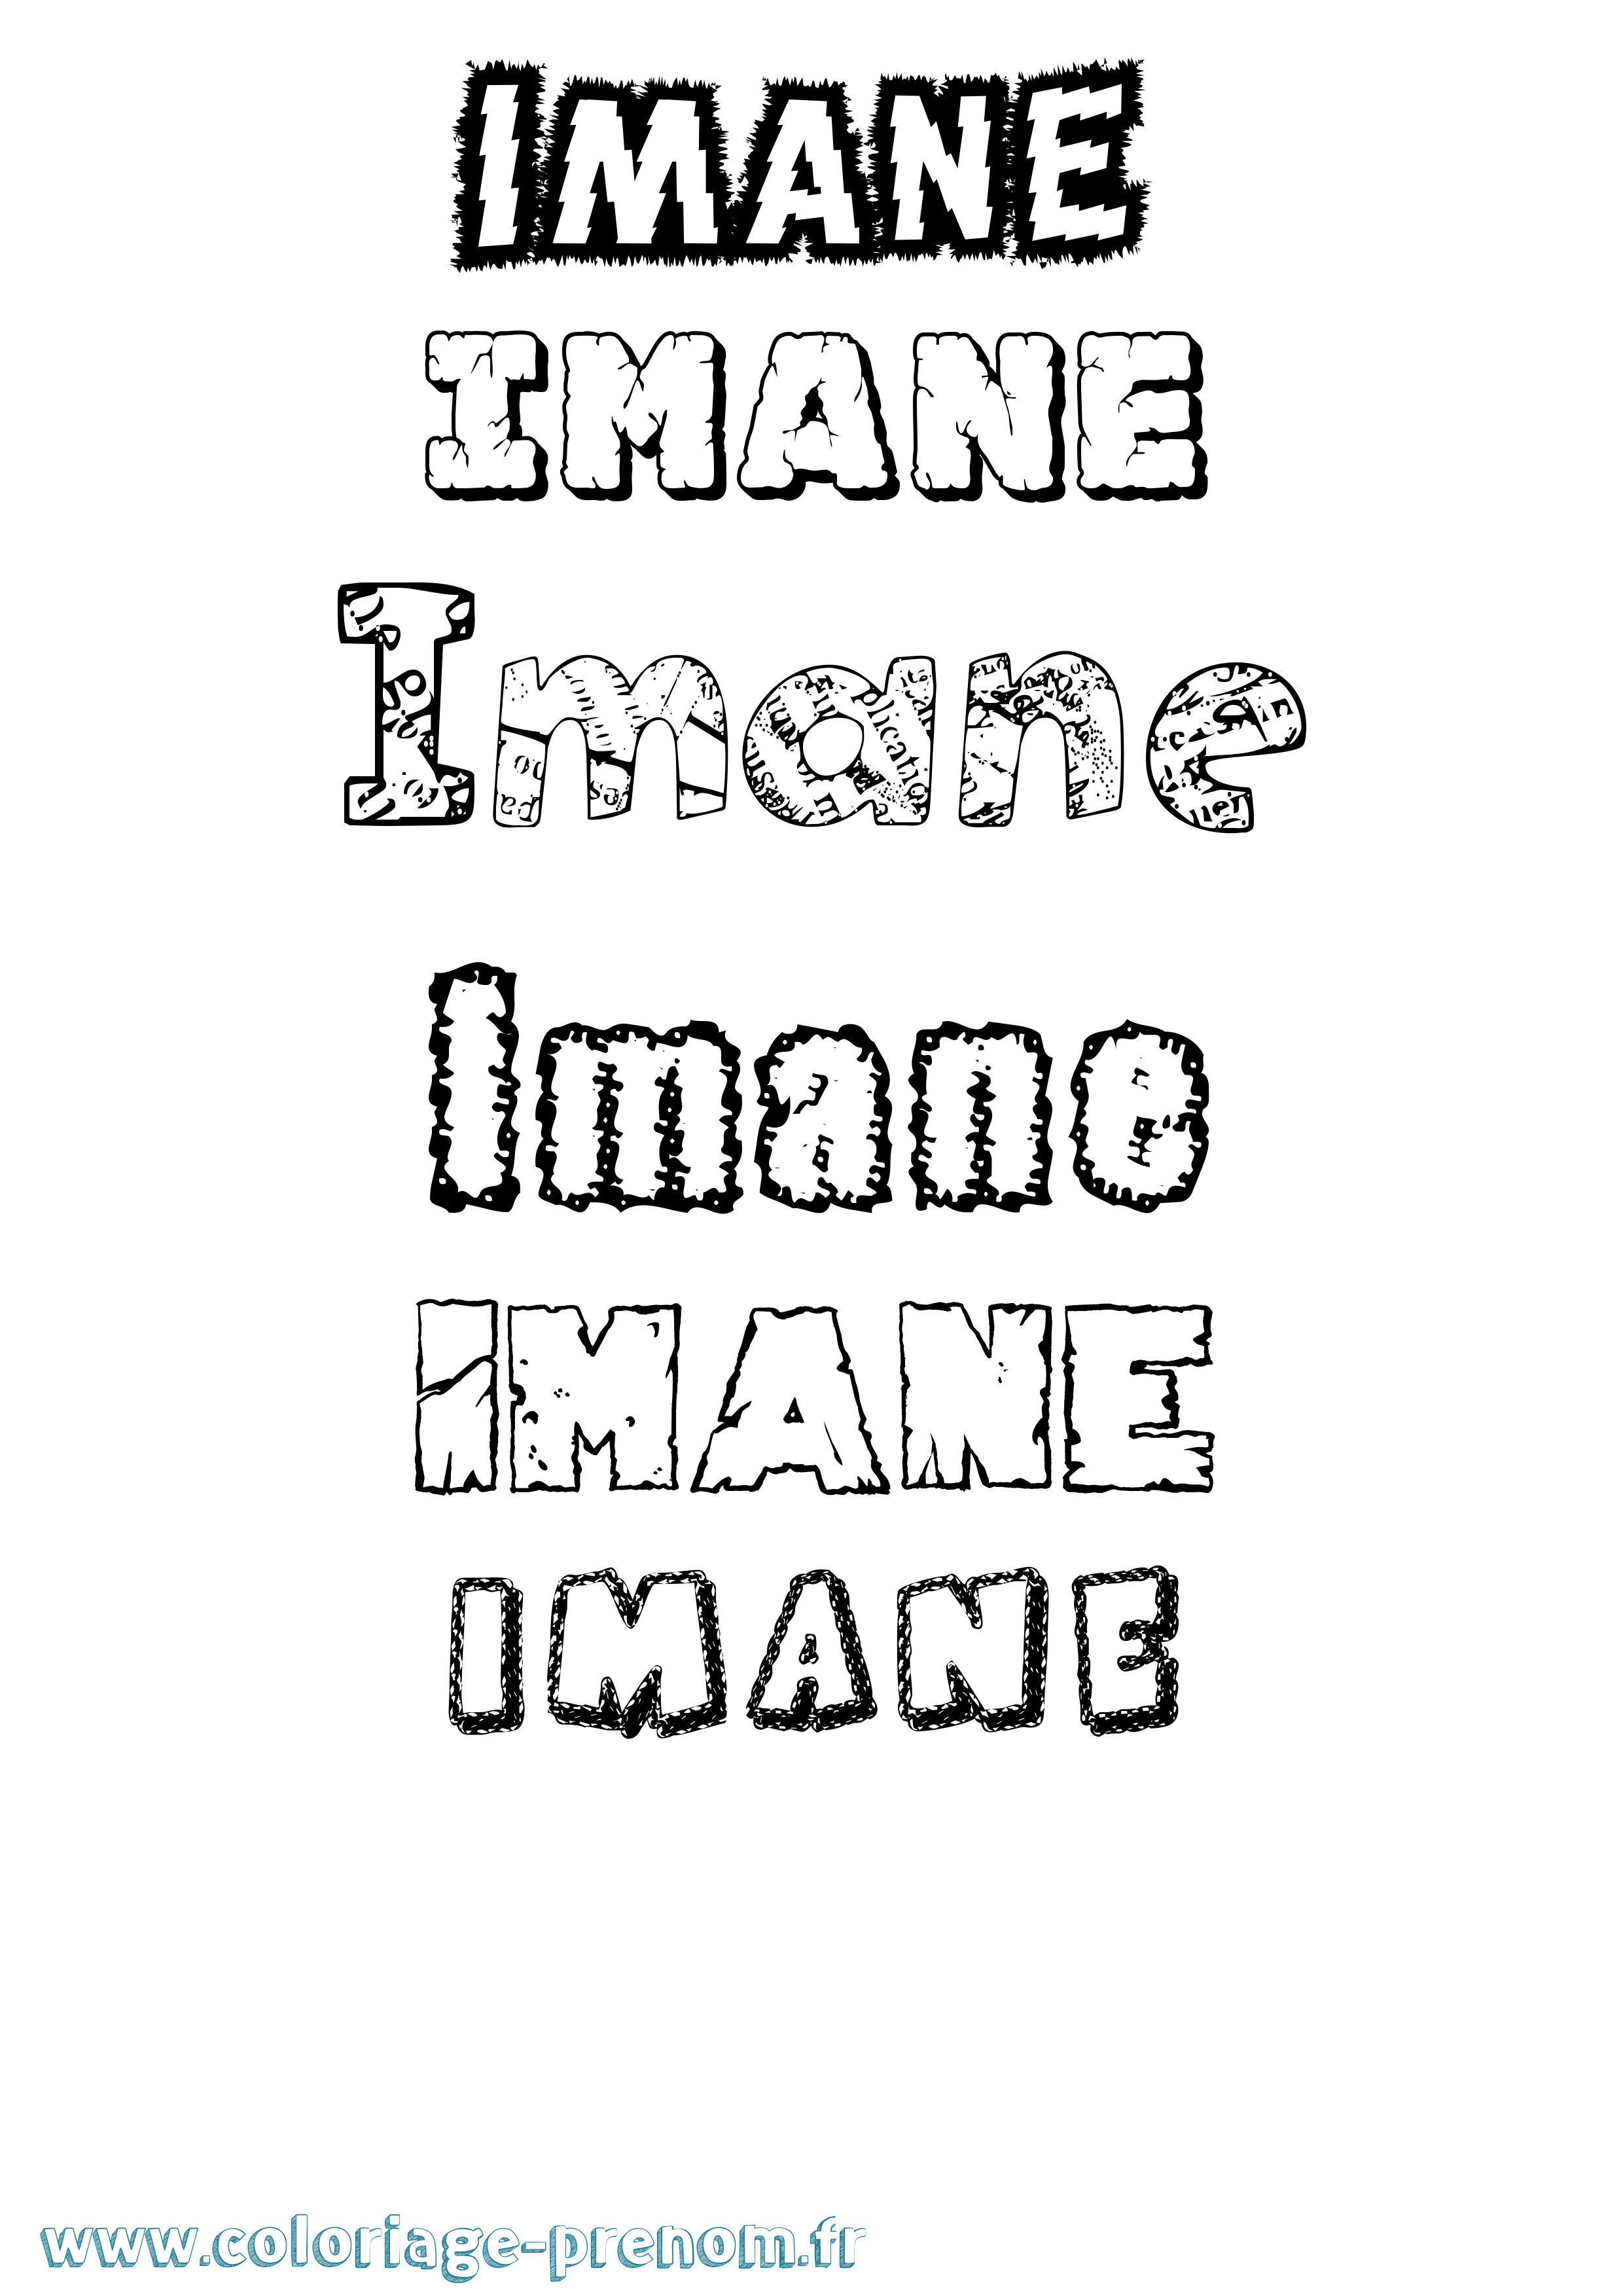 Coloriage prénom Imane